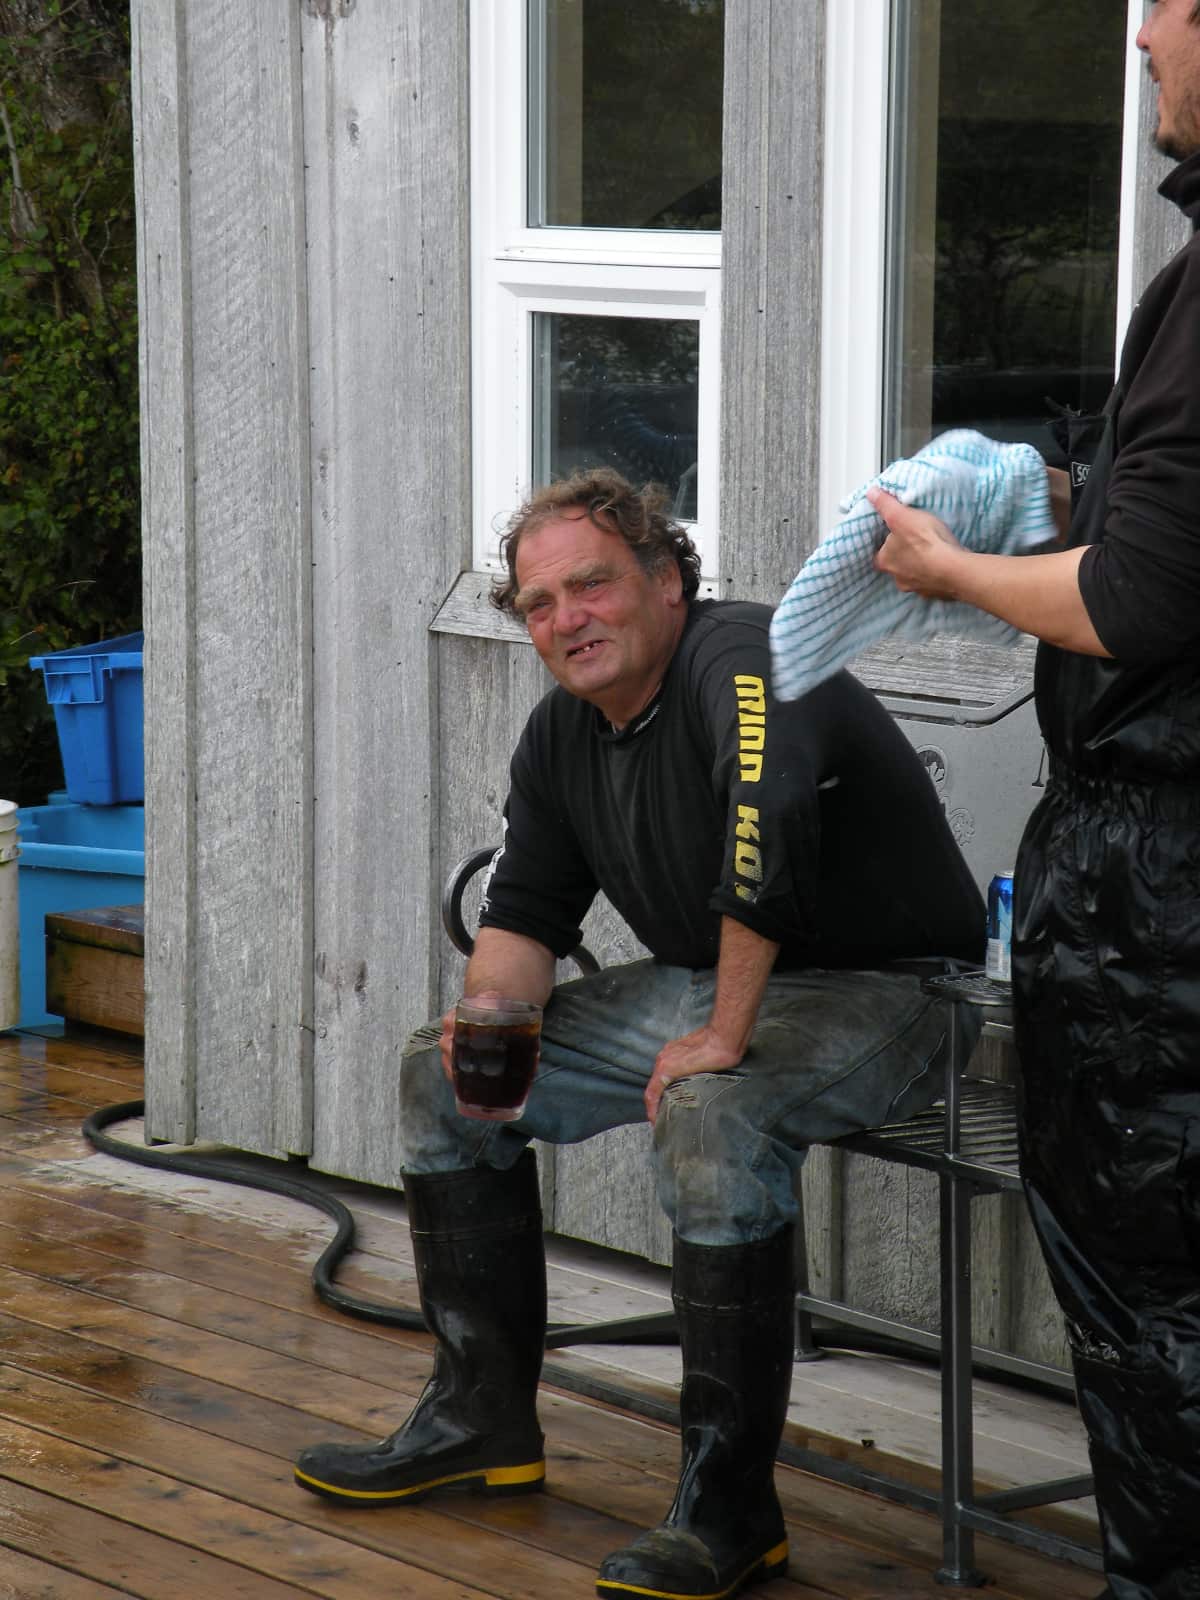 Man sitting on bench drinking a dark coloured beverage